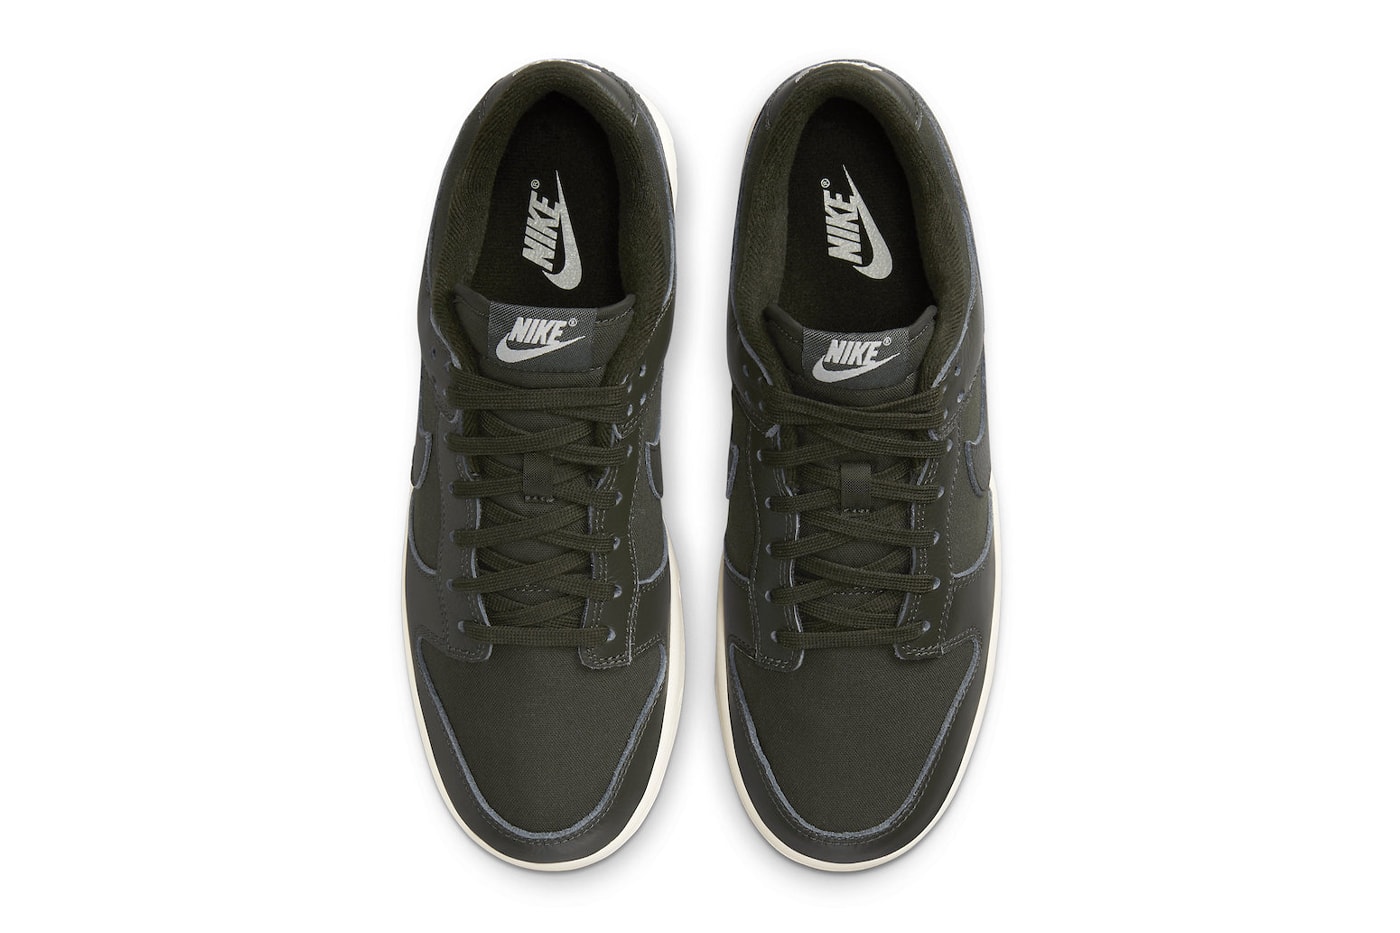 Официальный взгляд на кроссовки Nike Dunk Low Premium "Sequoia" DZ2538-300 Sequoia/Sequoia-Light Orewood Brown, кроссовки для скейтбординга с галочкой 